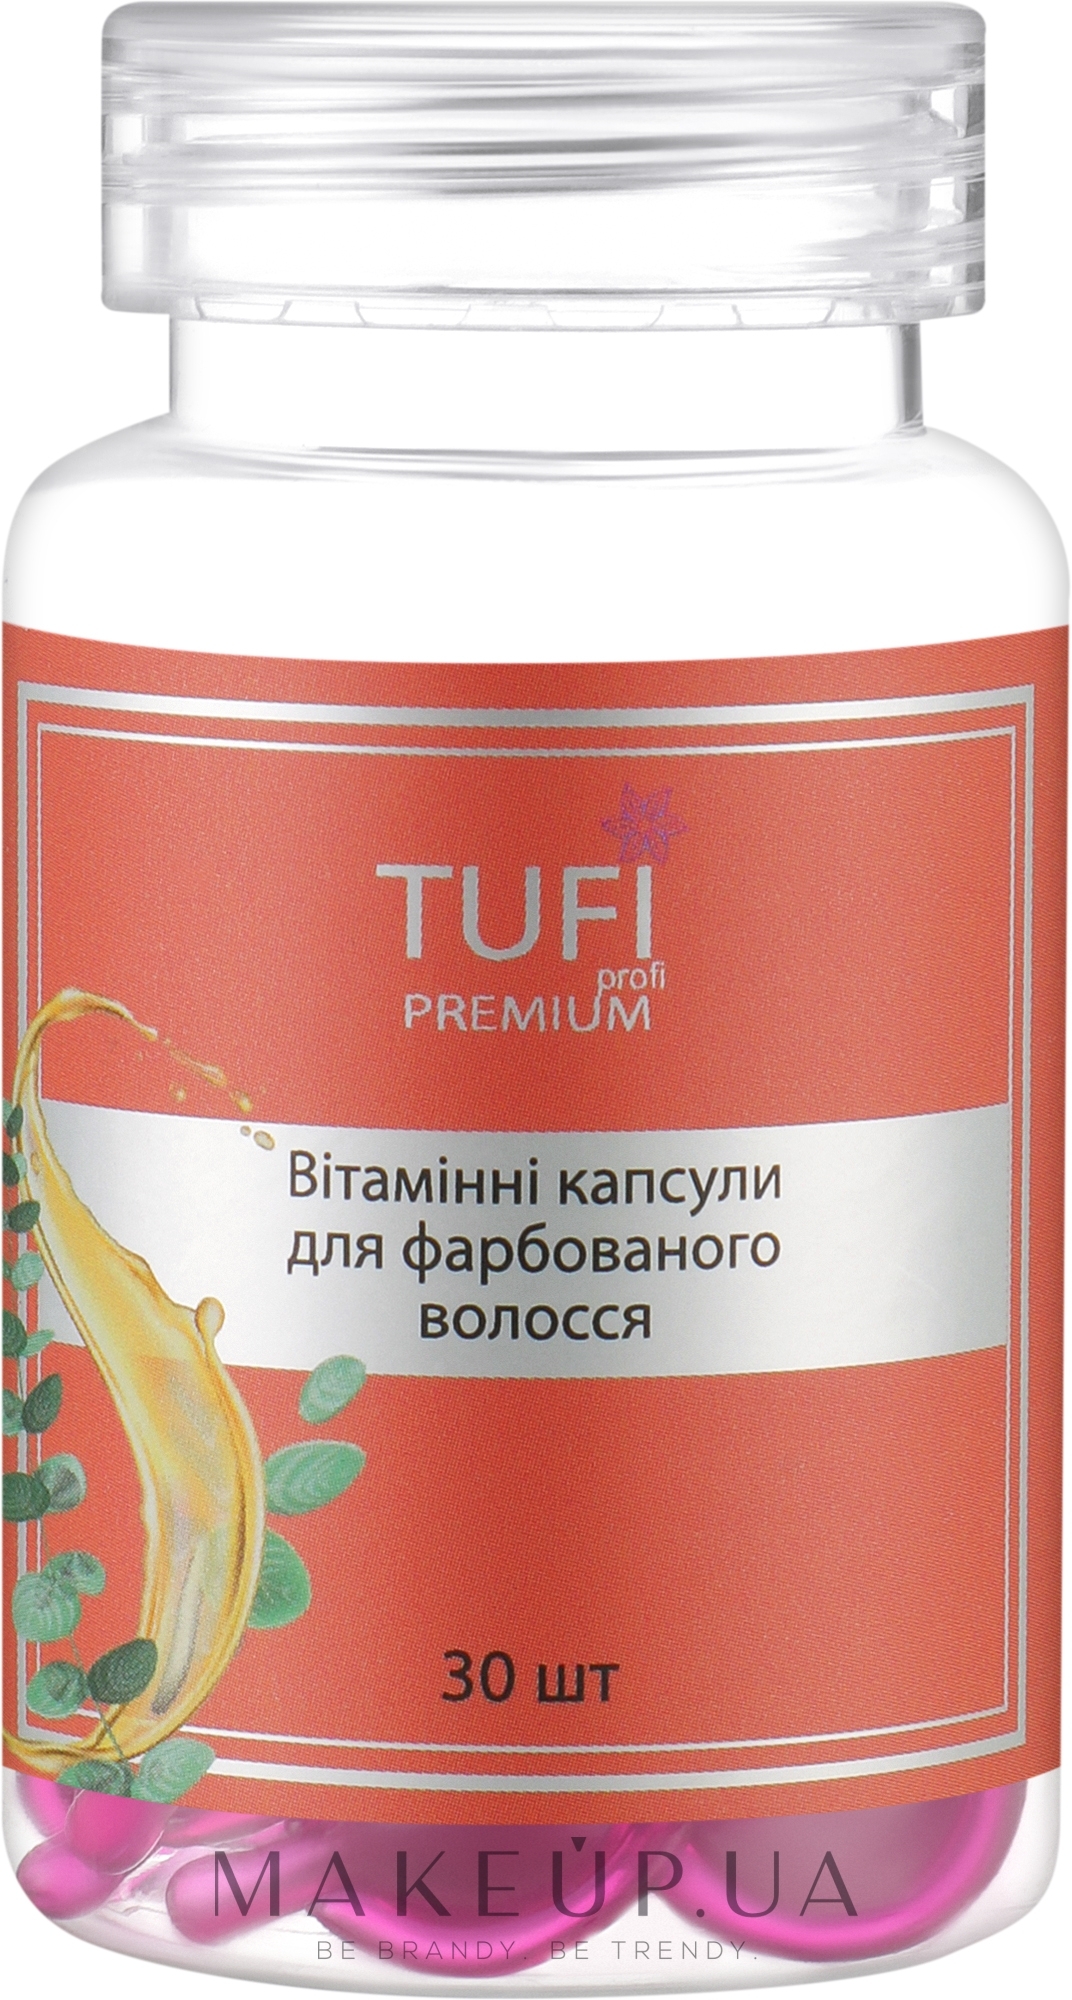 Вітамінні капсули для фарбованого волосся - Tufi Profi Premium — фото 30шт